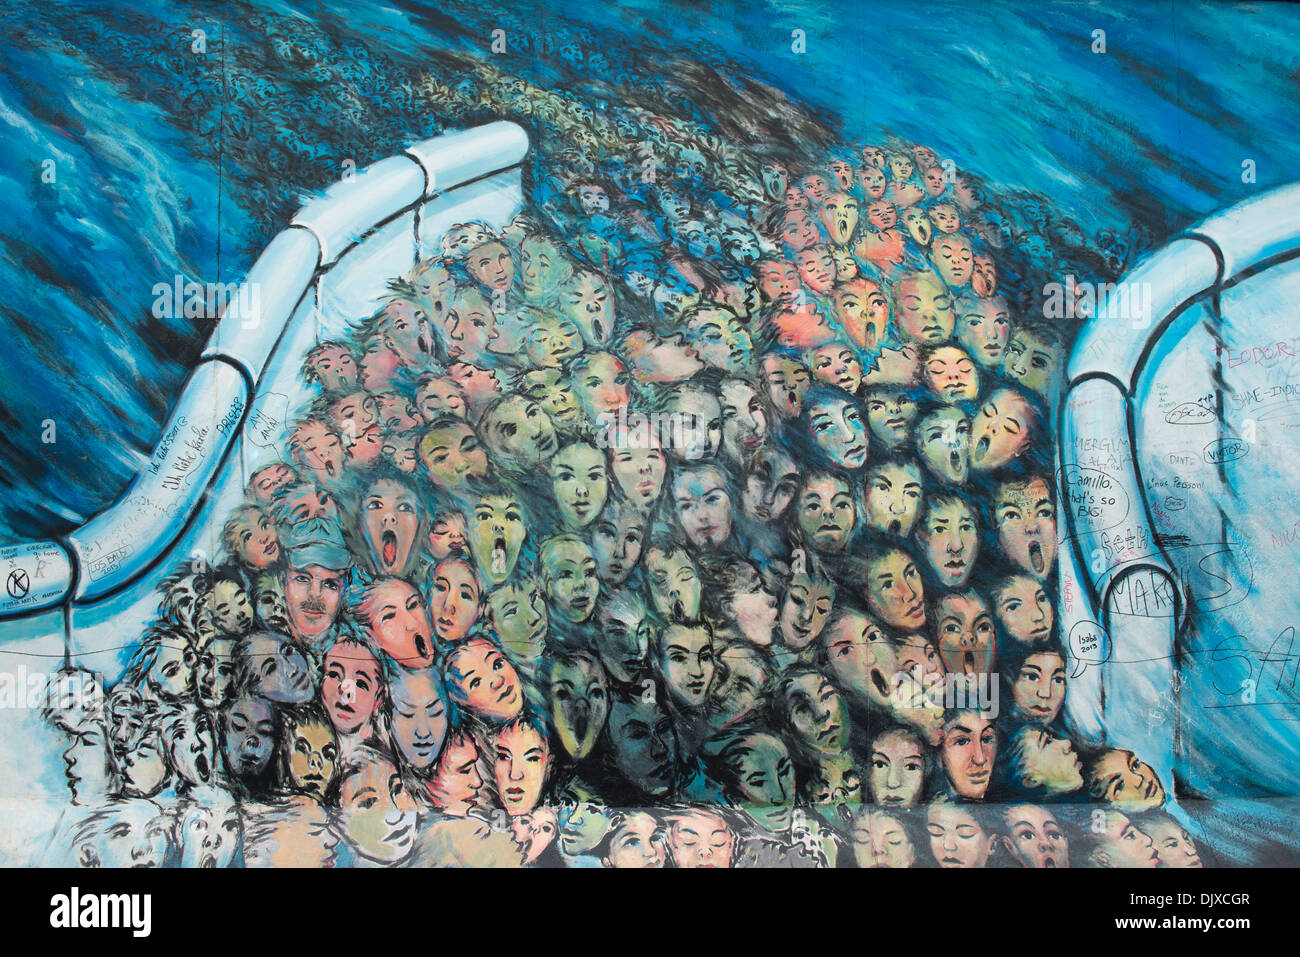 Arte dei graffiti raffiguranti le persone in fuga a Berlino Est. Dipinto sulla East Side Gallery di Berlino, Germania. Foto Stock